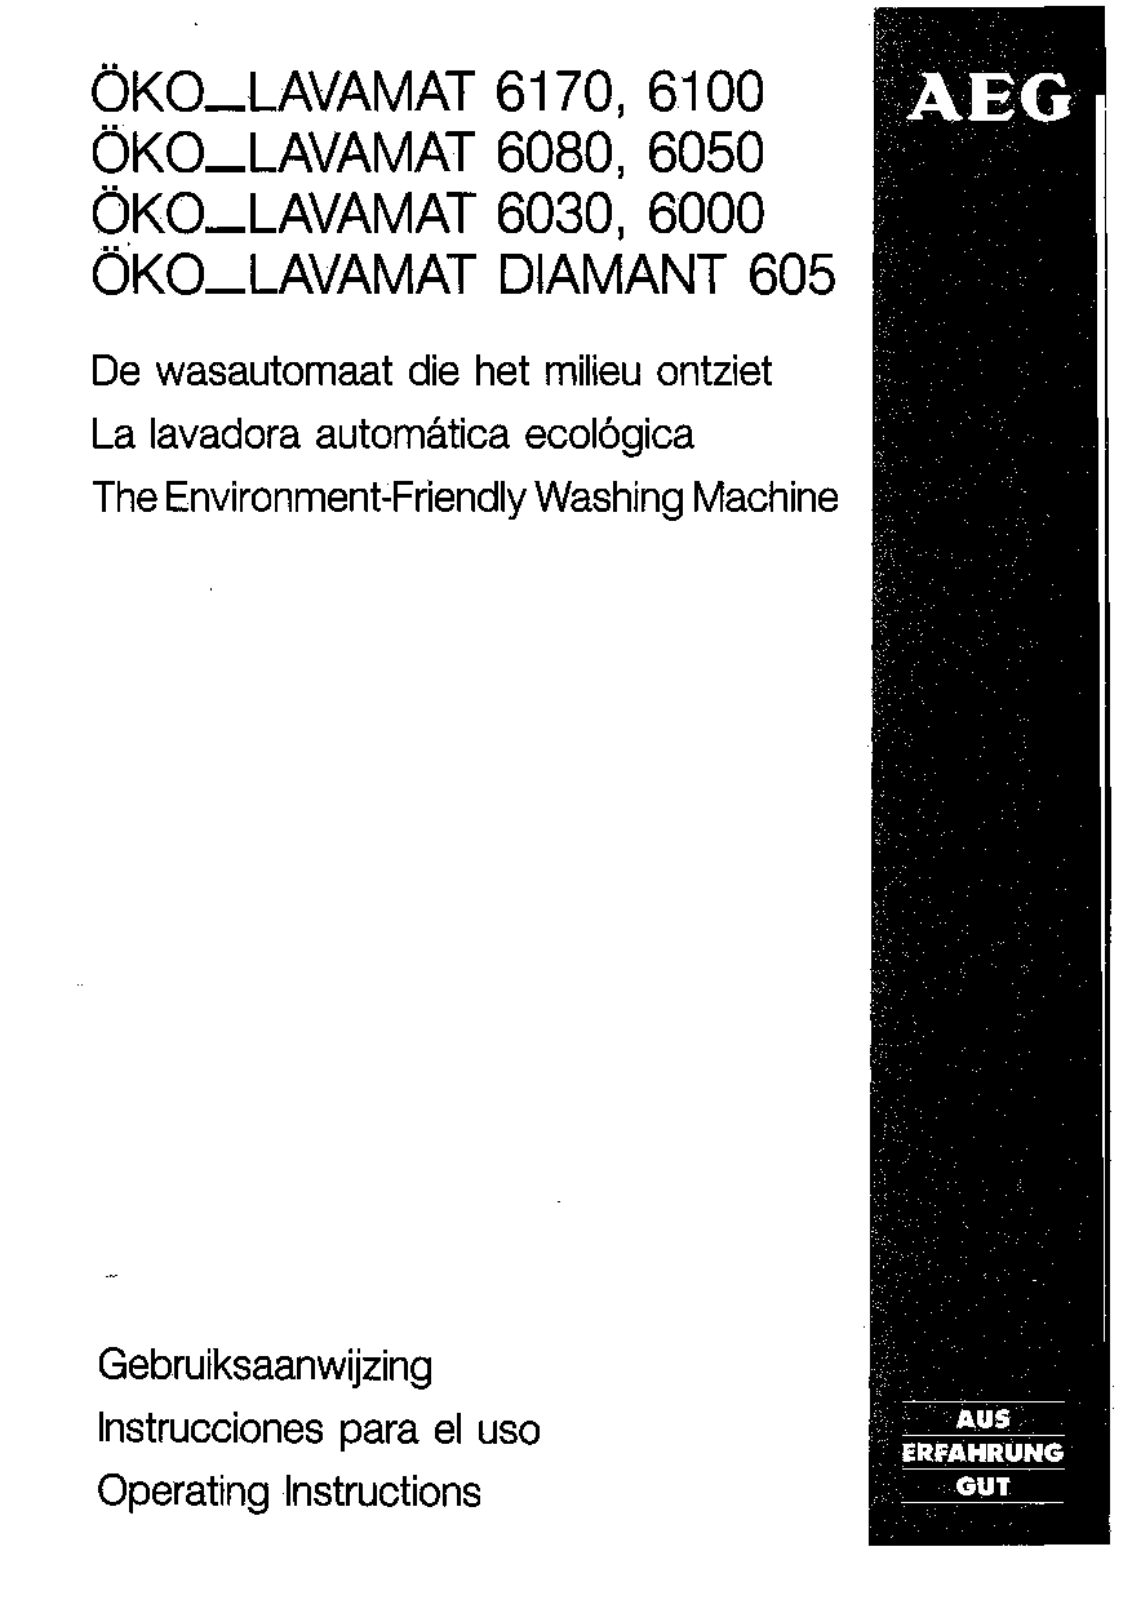 AEG LAV6000-WN-I, LAV6030-W, LAVDIAMANT605-W Manual